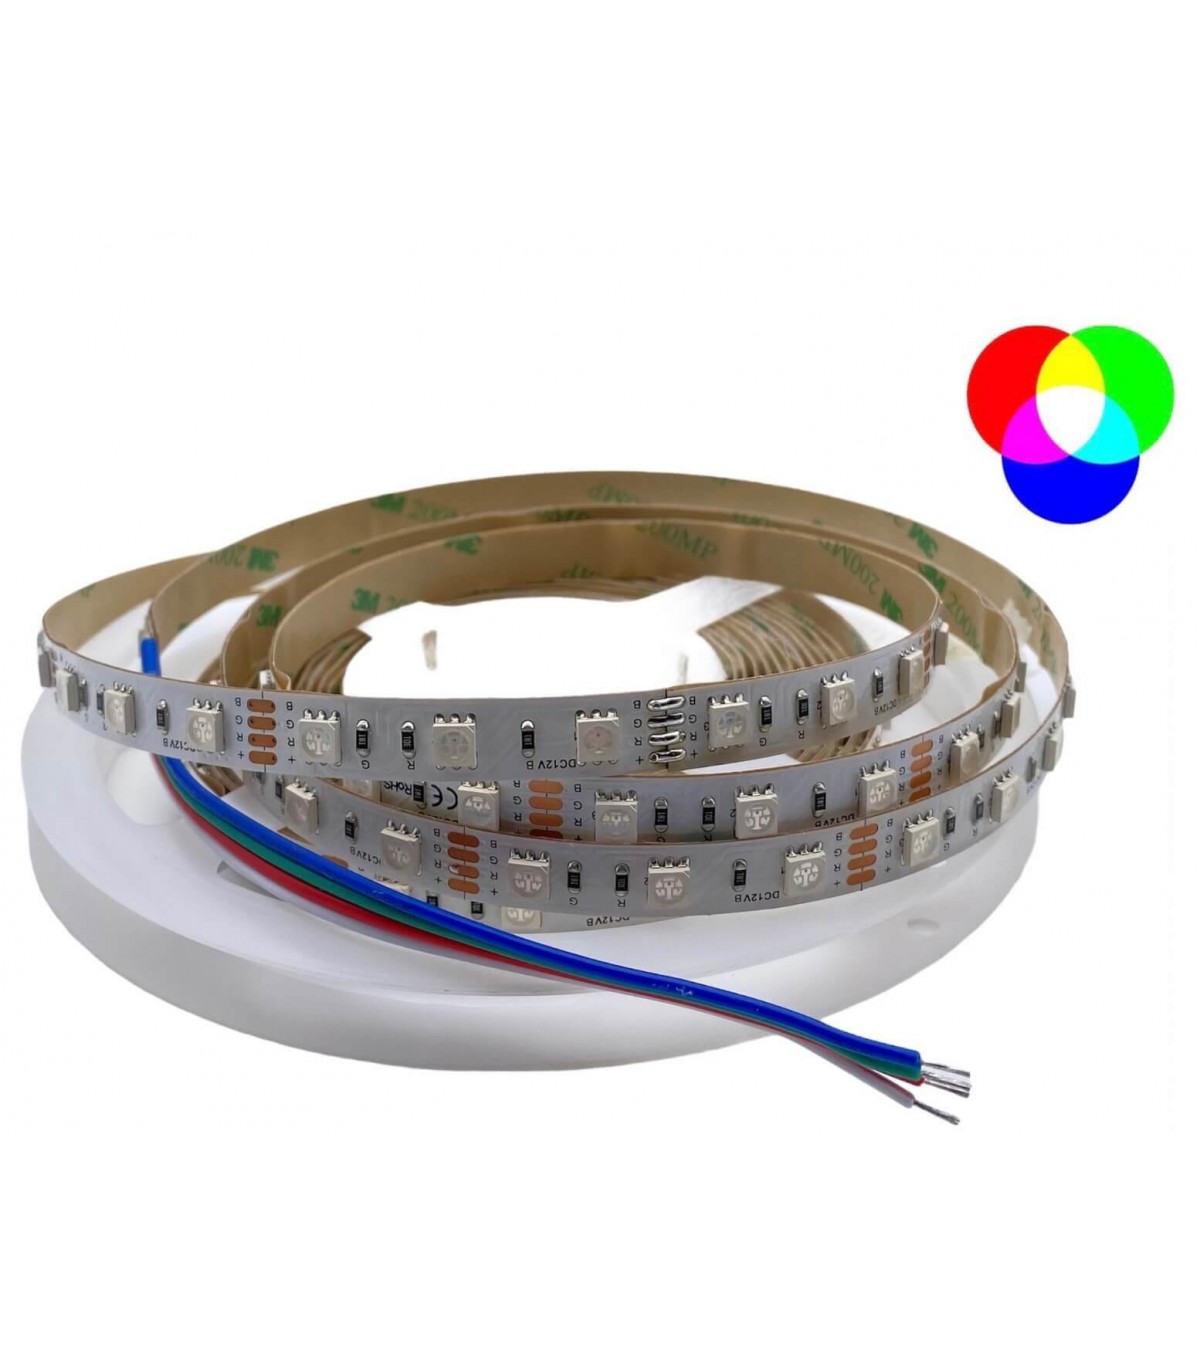 Ruban LED : un éclairage moderne et facile à installer